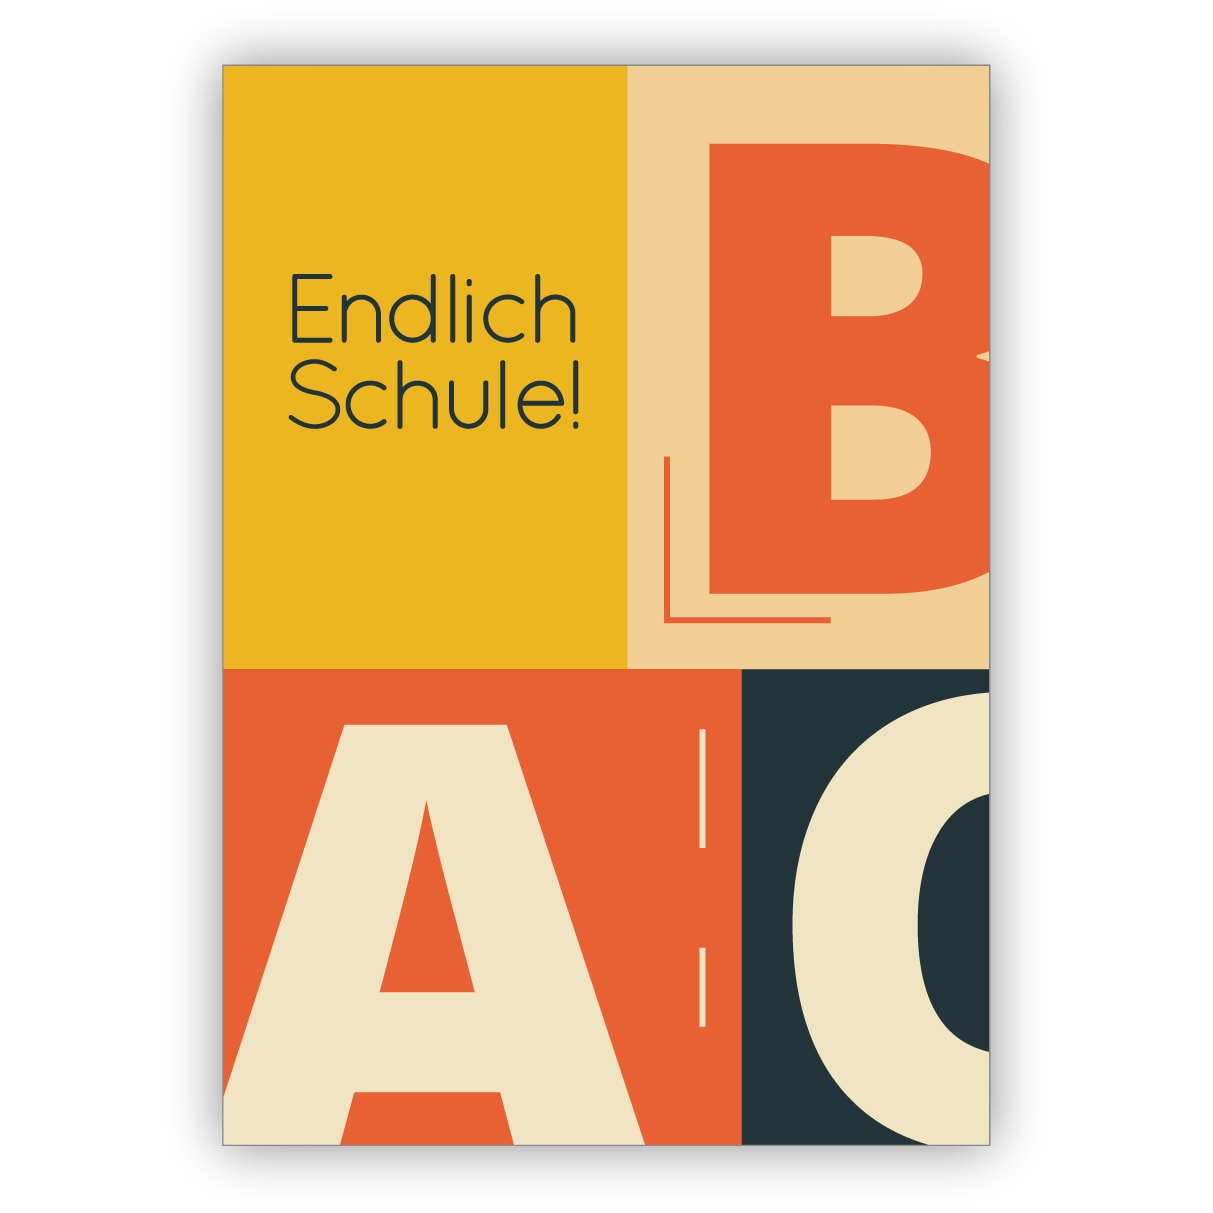 Schicke Designer Retro Glückwunschkarte zur Einschulung für Erstklässler mit Vintage ABC: Endlich Schule!